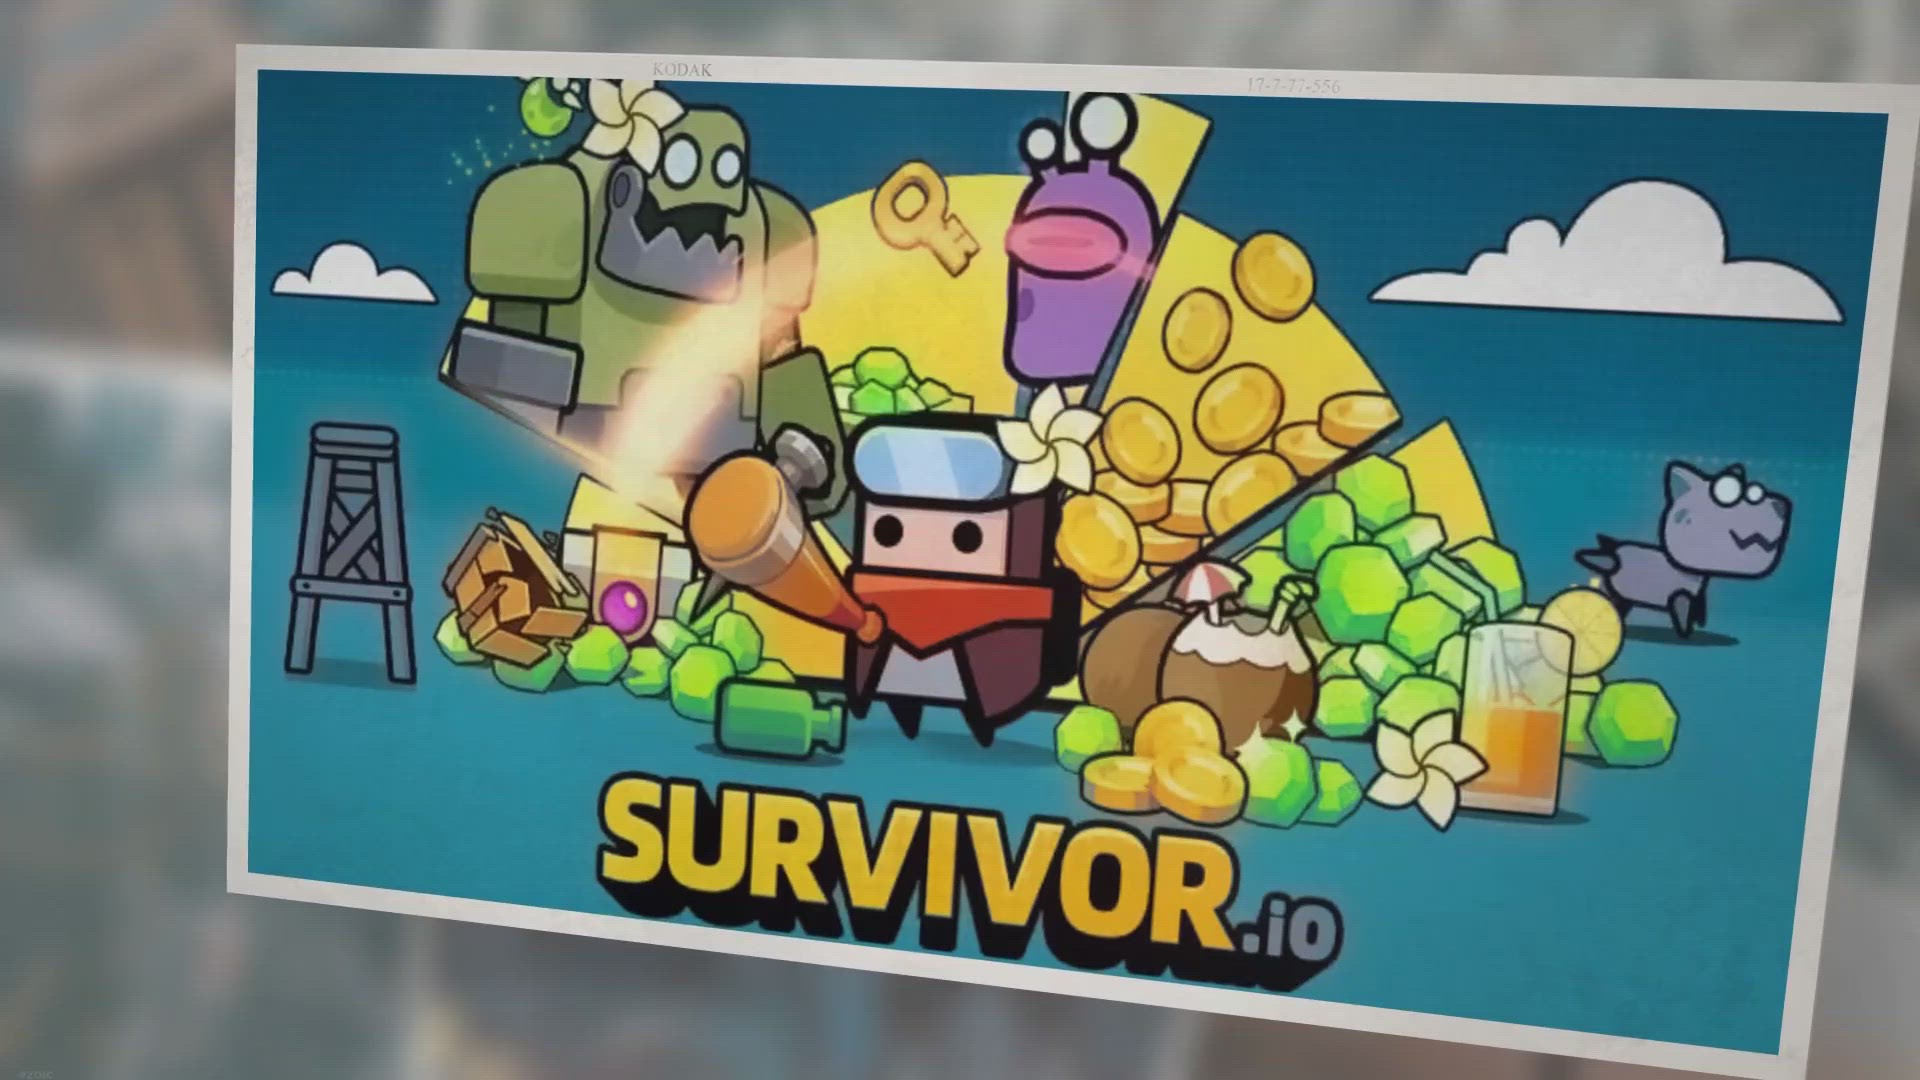 Survivor.io codes ✓ Survivor.io rewards ✓ Survivor.io gameplay